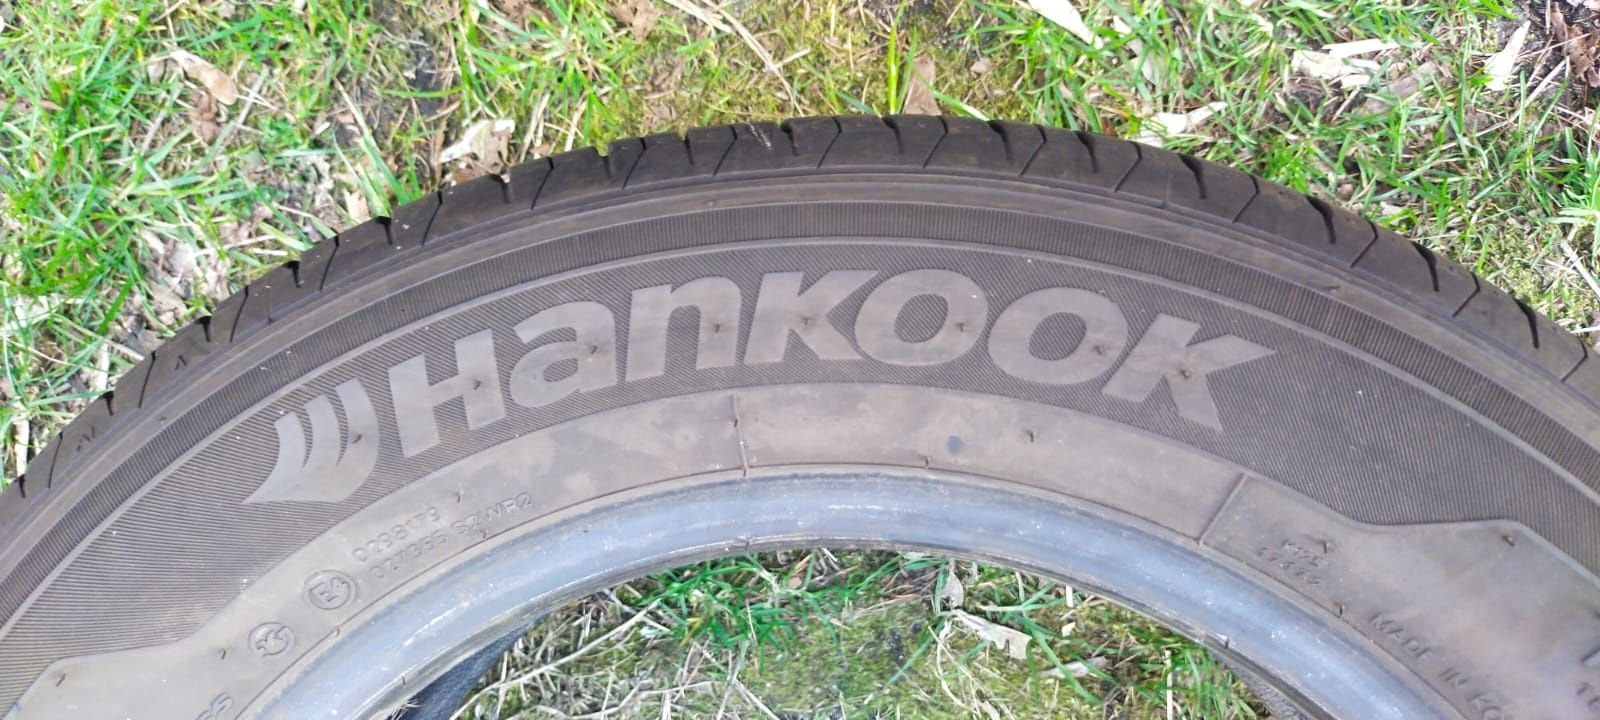 Hankook 205/60/16